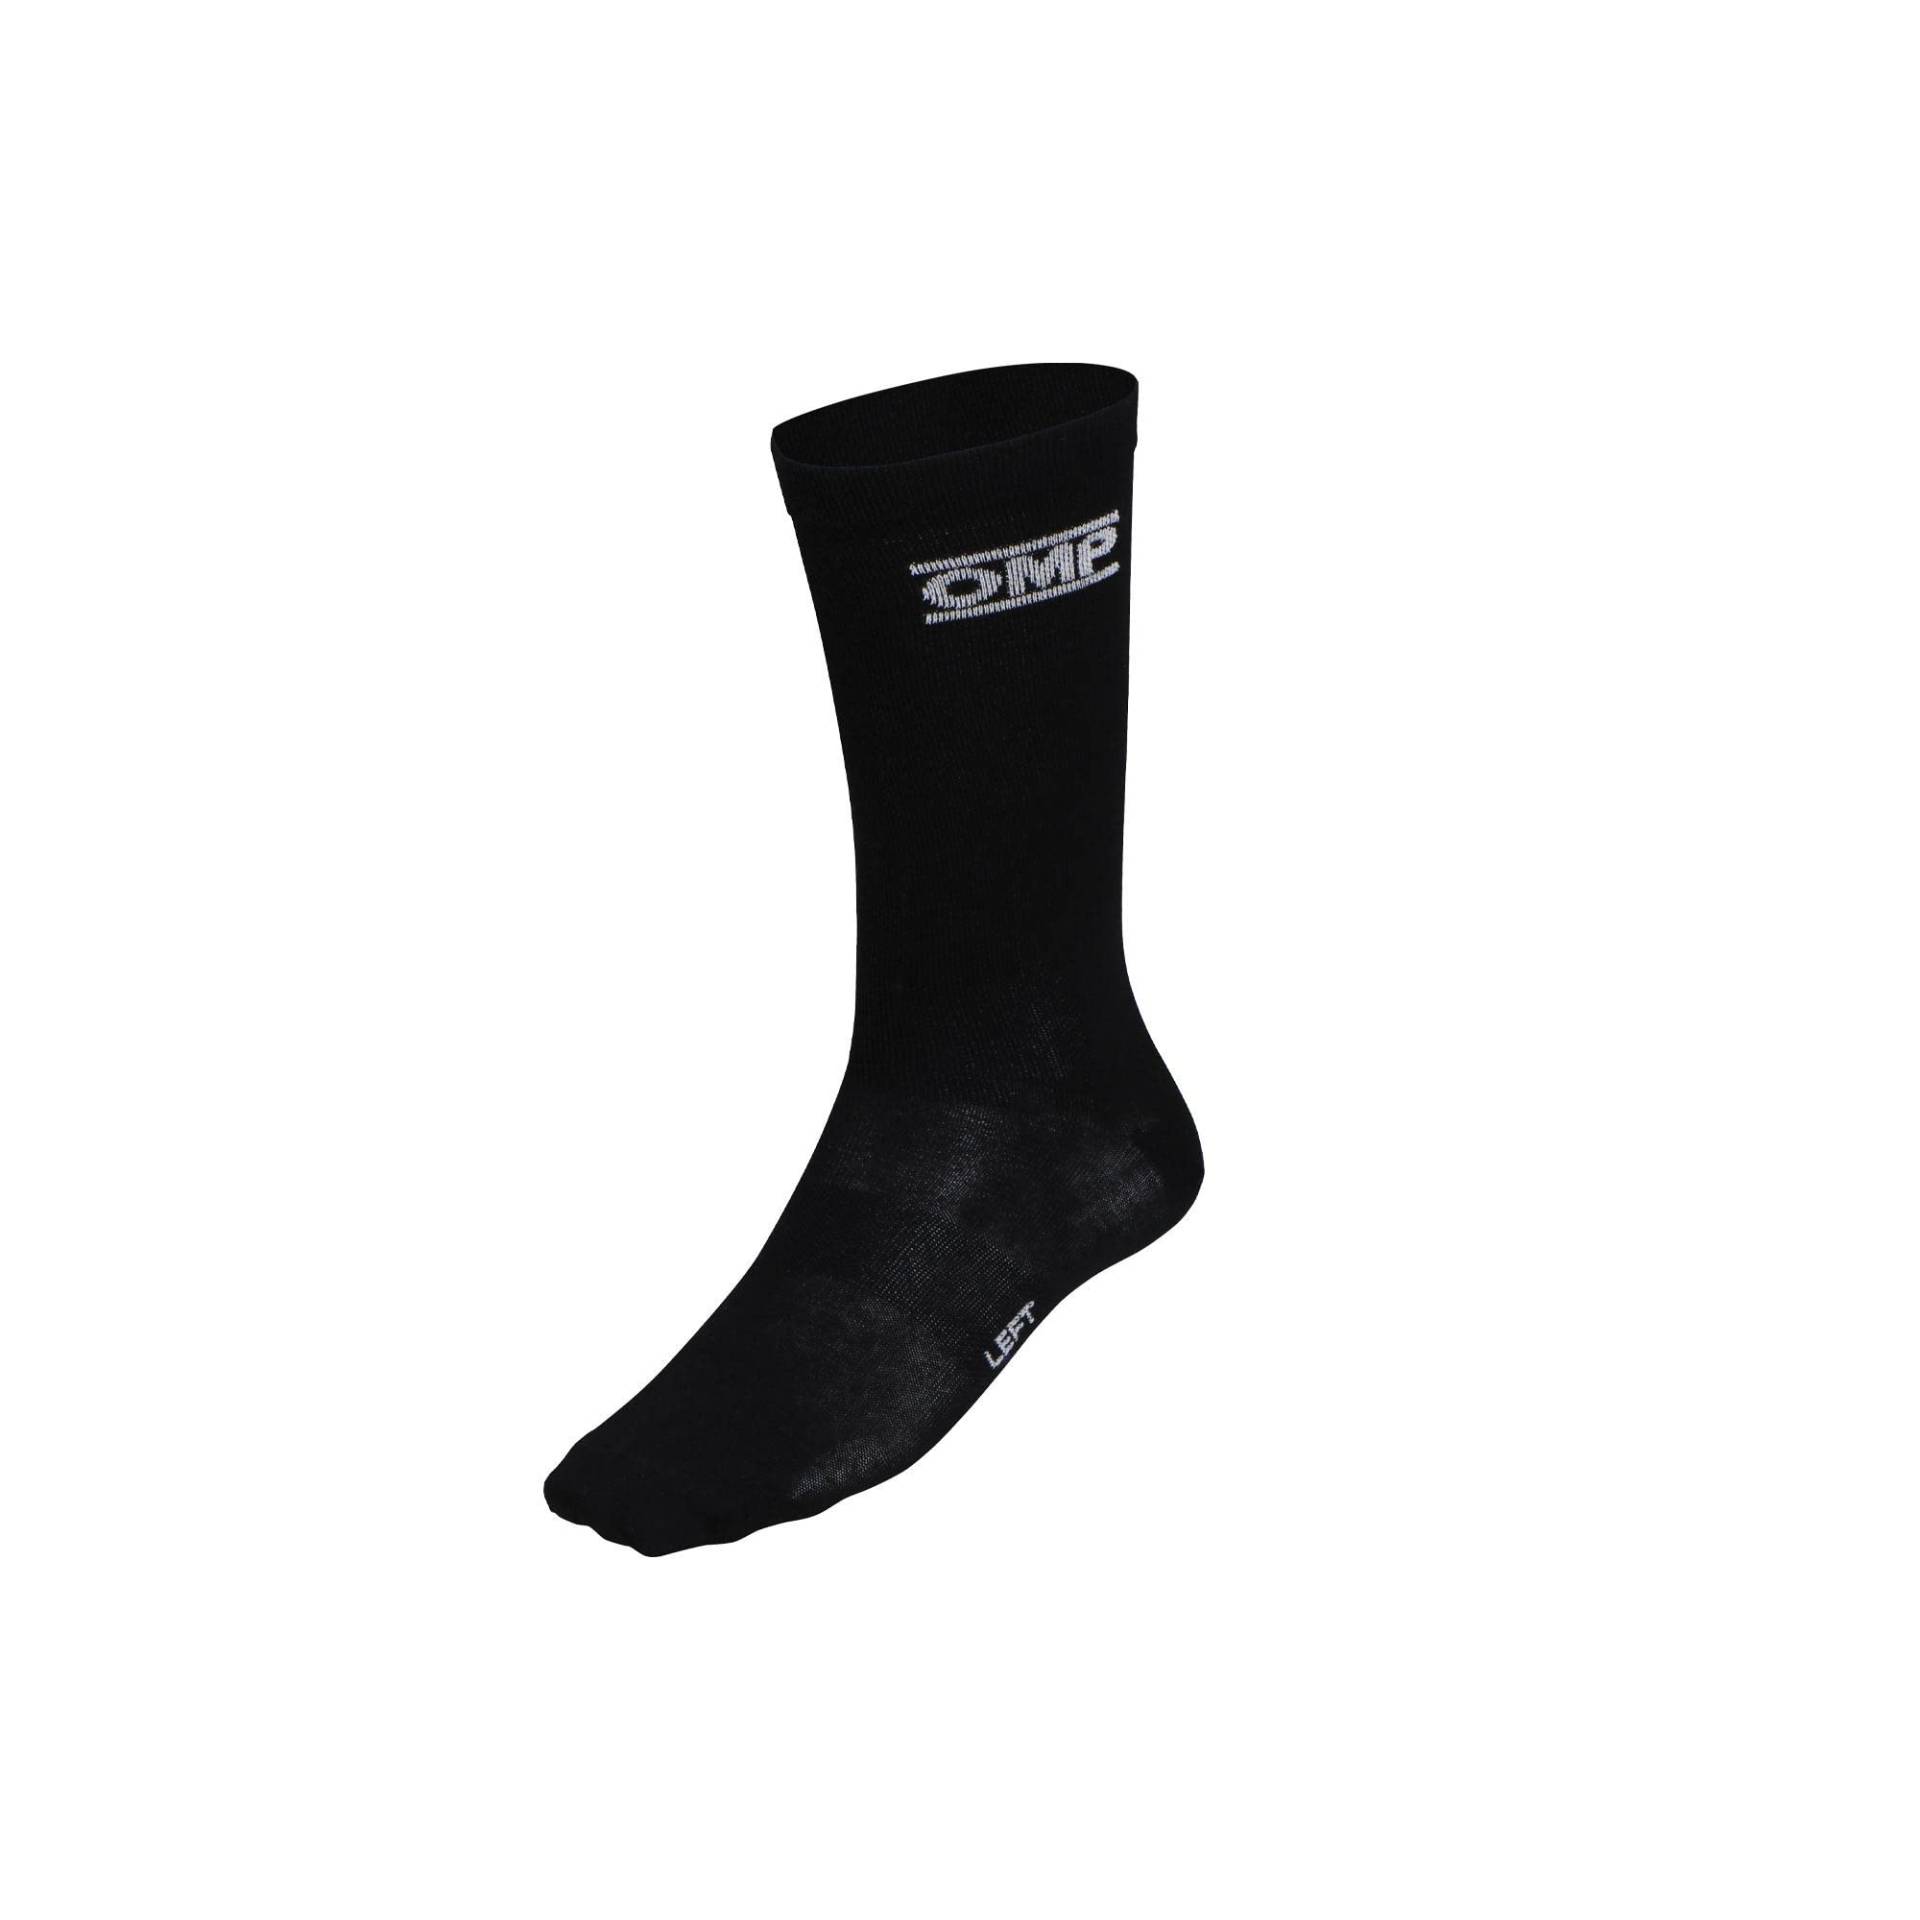 Omp Technische Socken schwarz Größe L Fia 8856-2018 von OMP